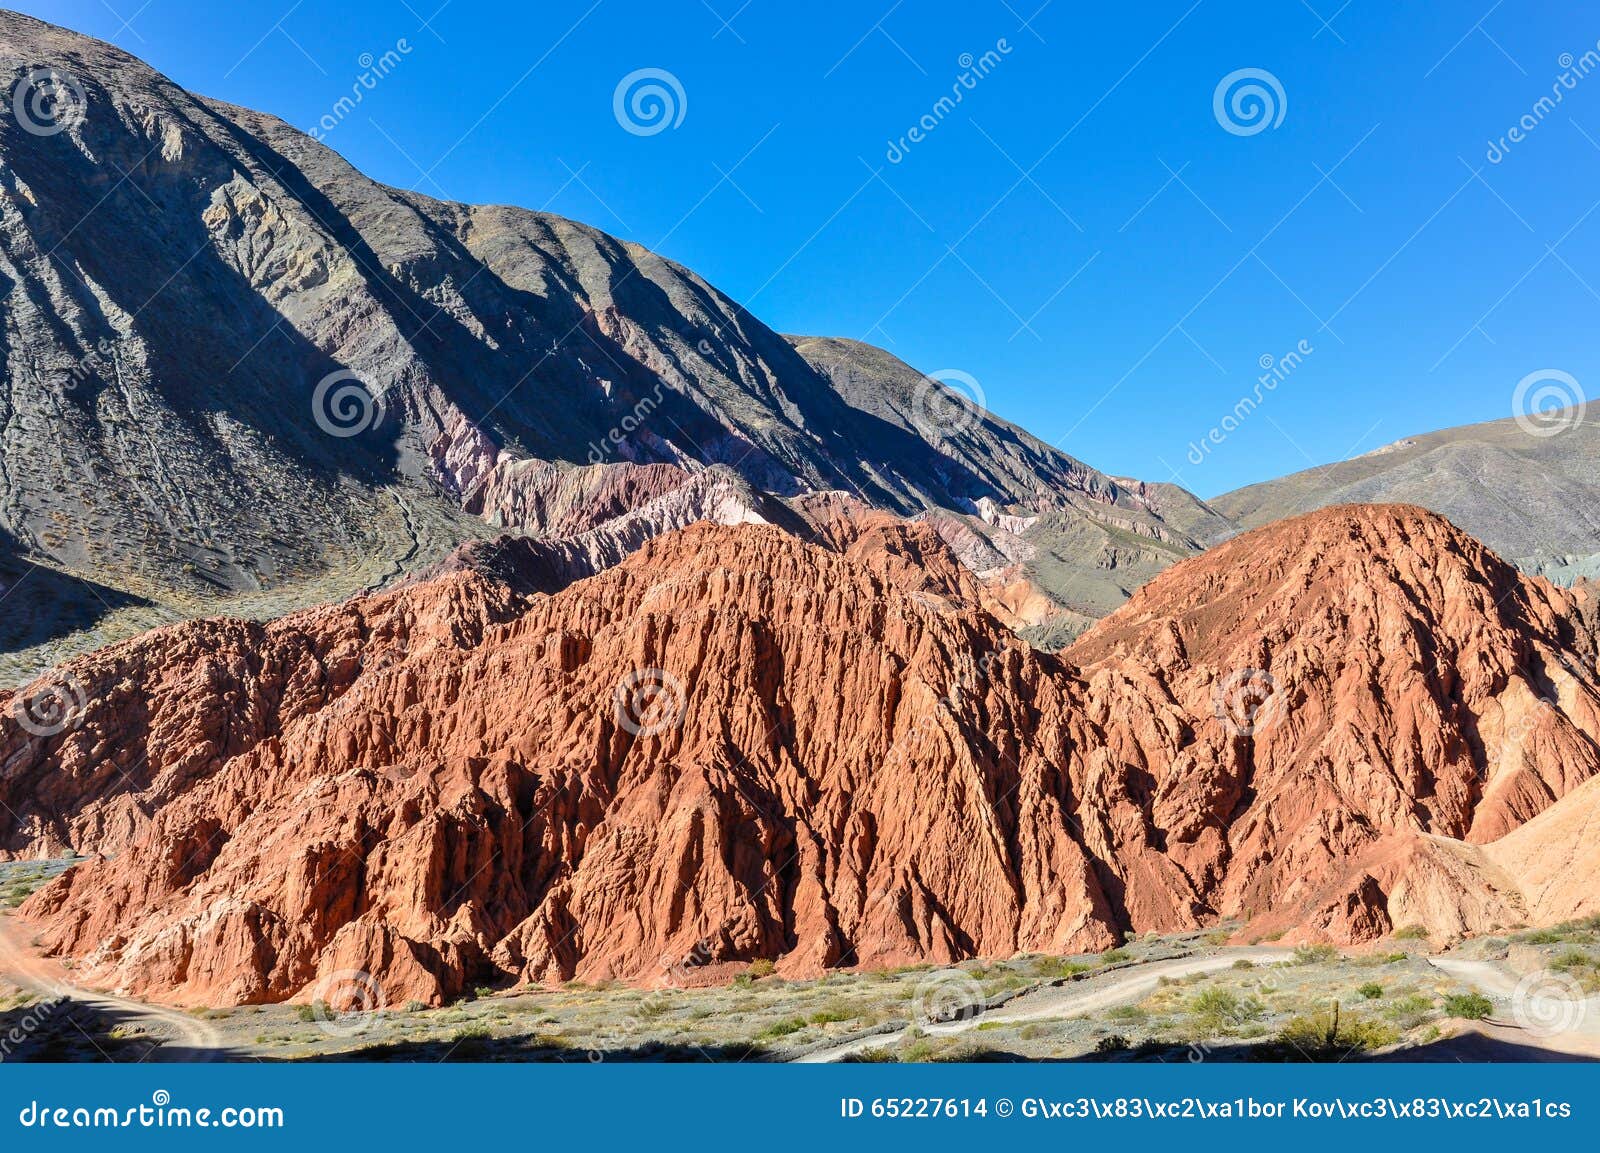 cerro de los siete colores, purnamarca, argentina